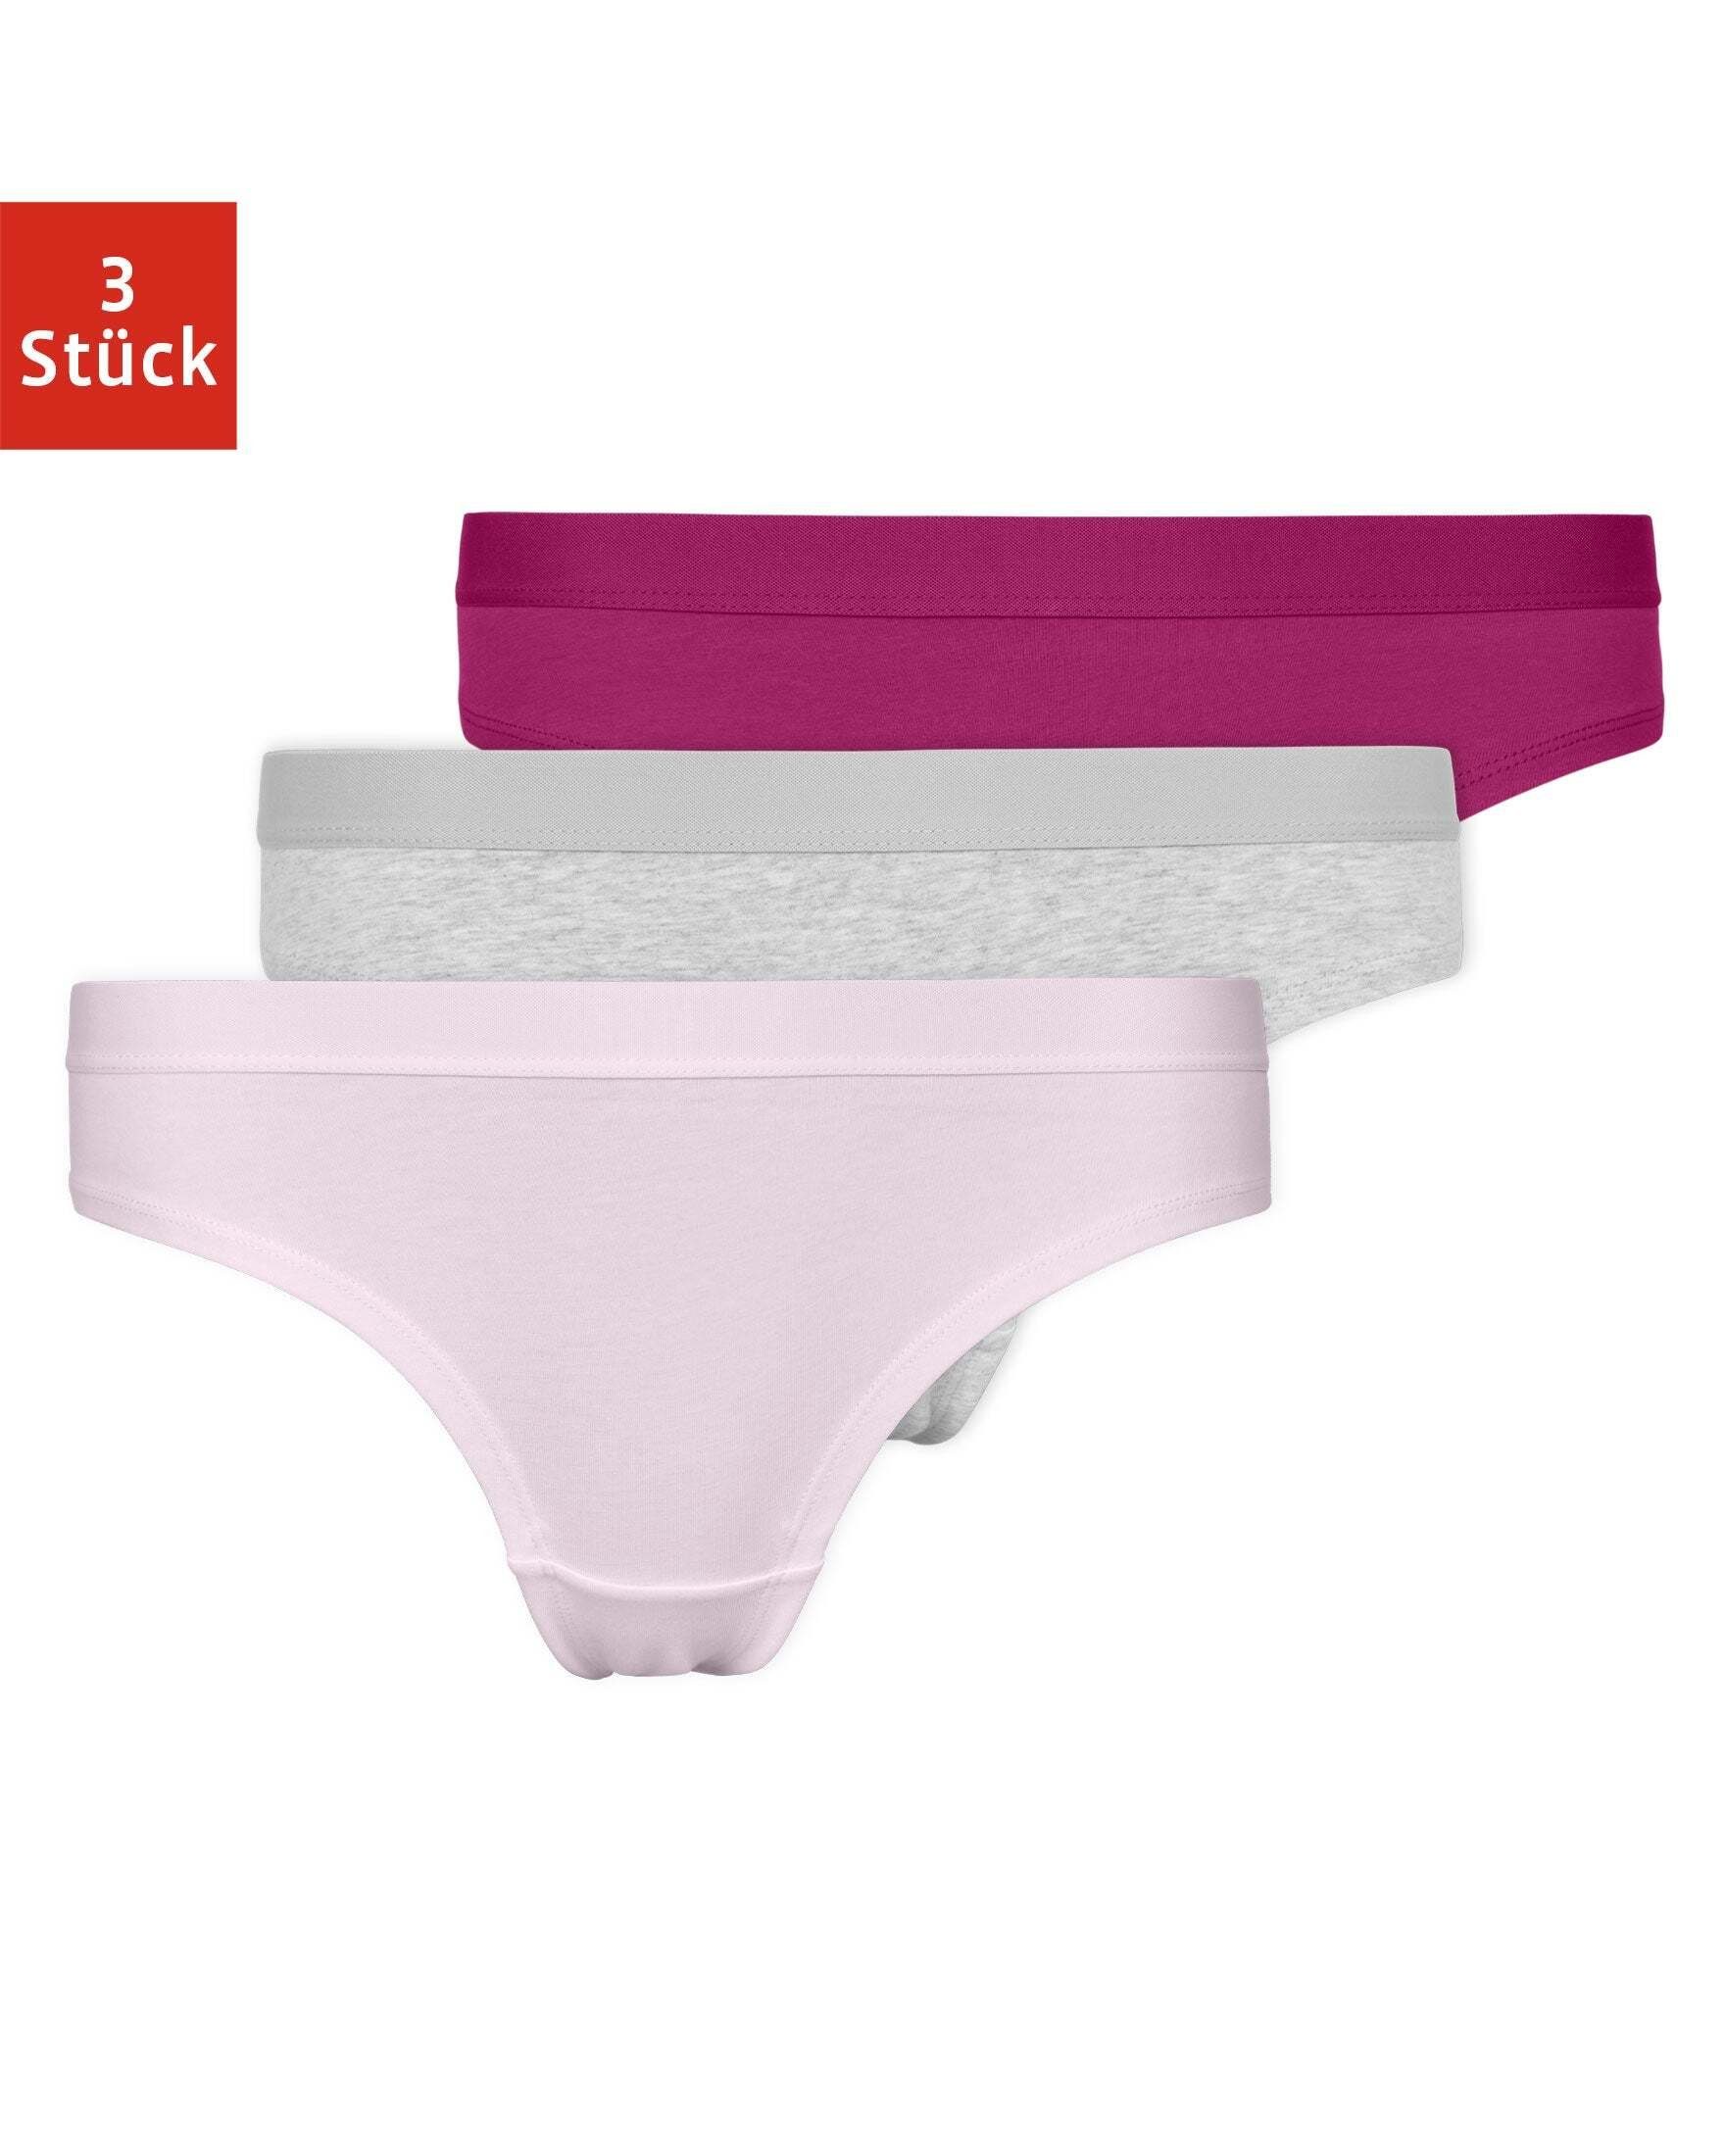 SNOCKS Brasilslip »Unterwäsche Damen Brazilian Slip Unterhosen« (3 Stück)  aus Bio-Baumwolle mit Gummibund online kaufen | OTTO